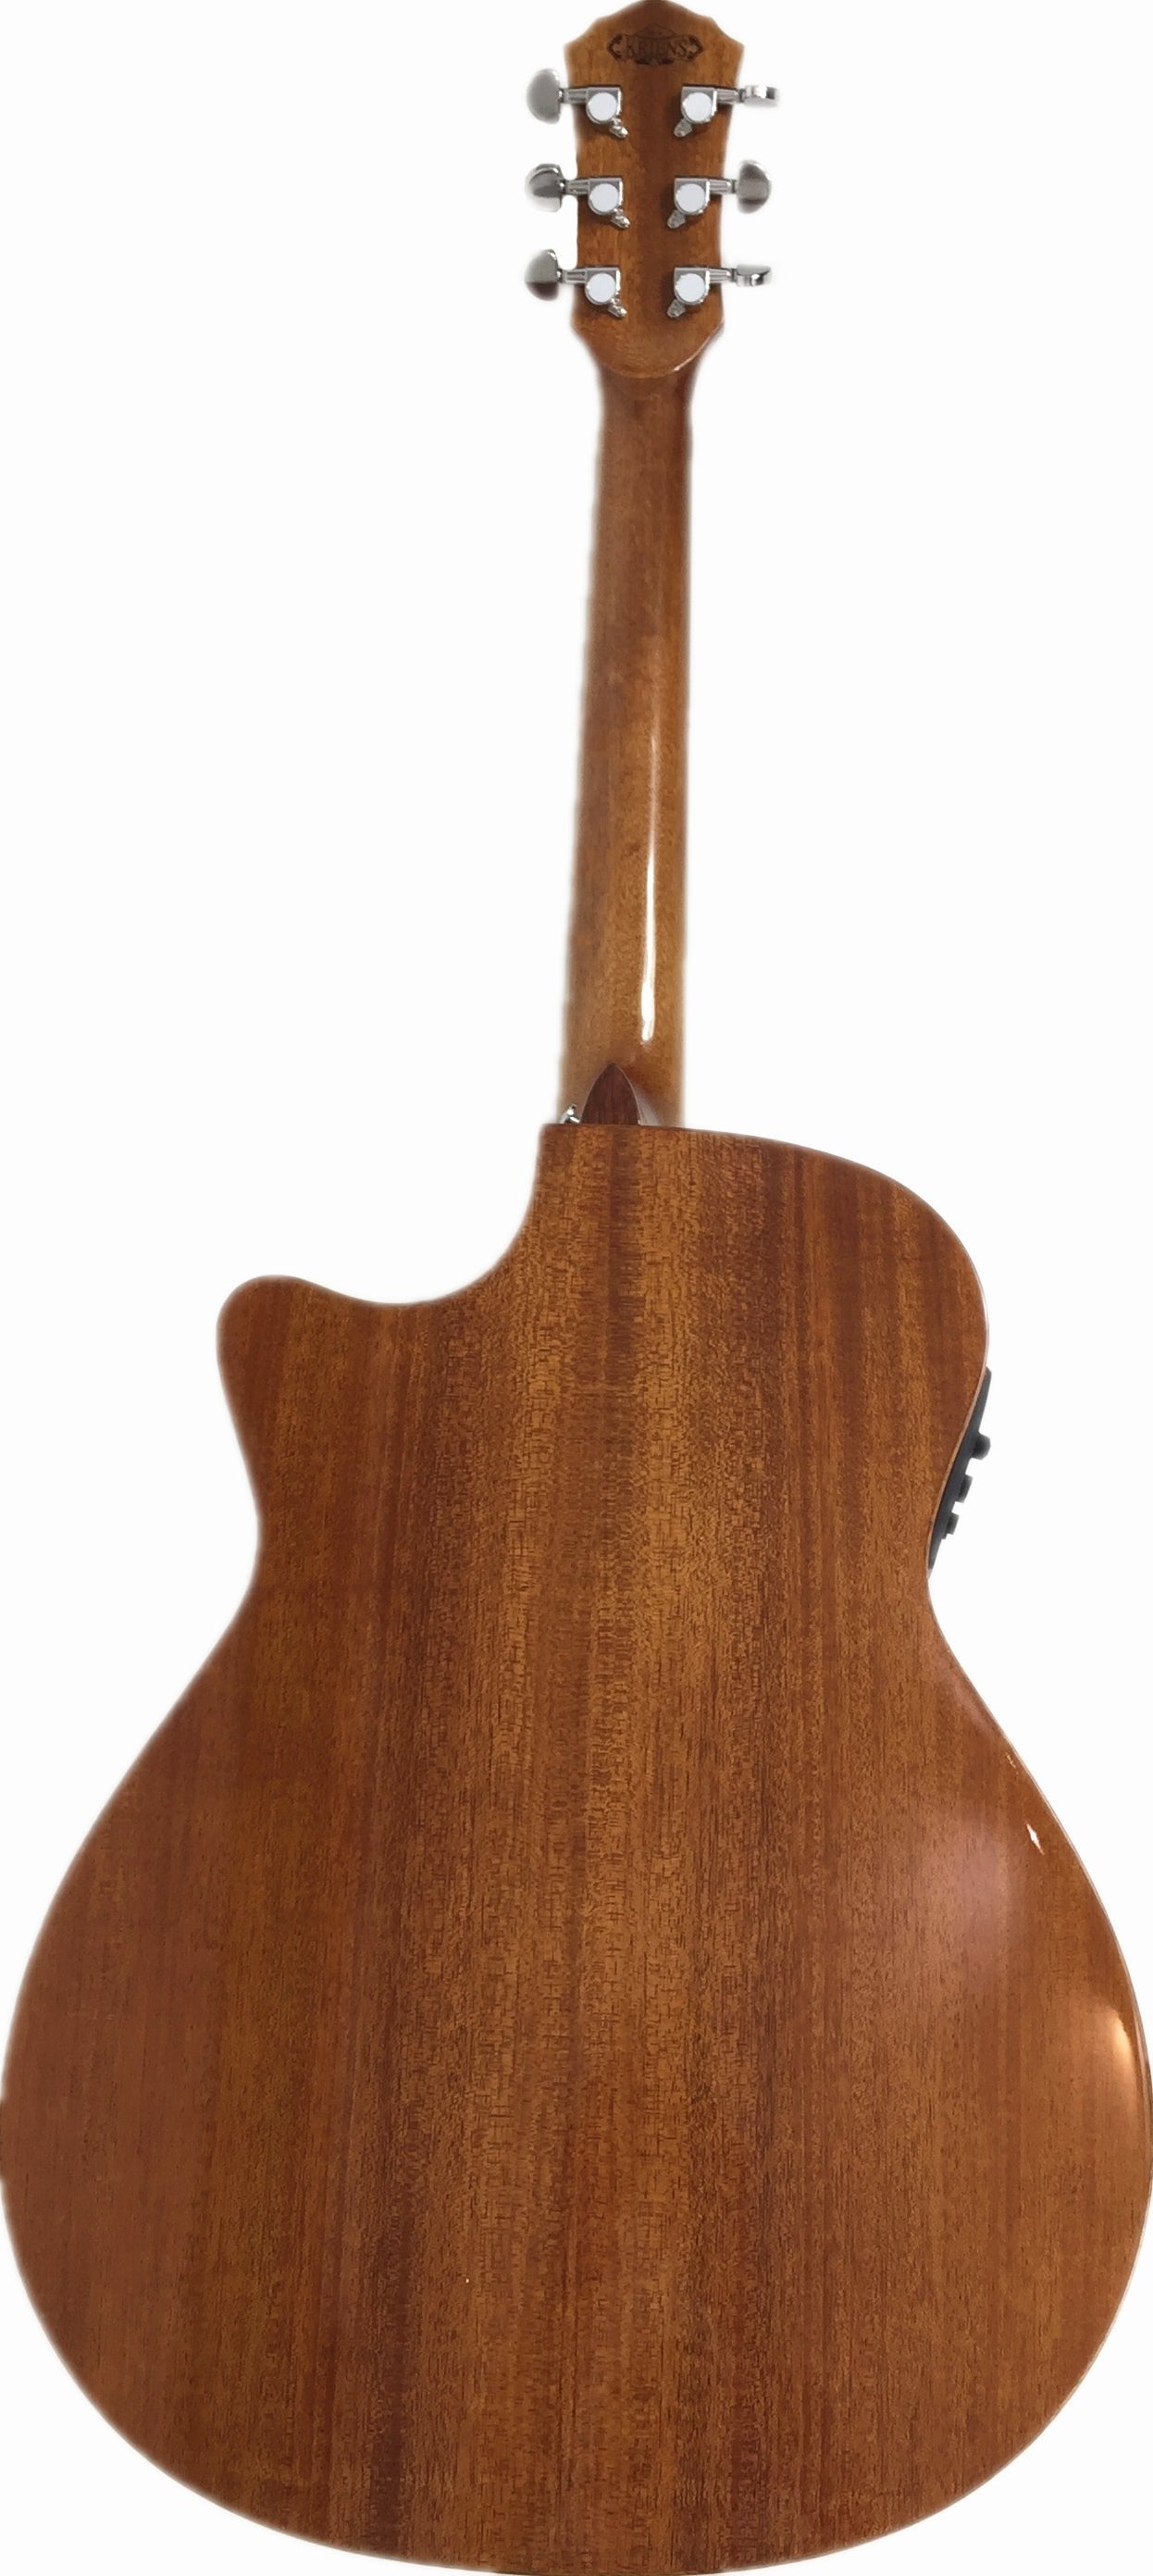 Kriens Flame Maple Top Built-In Fishman Pickup/Tuner OM Cutaway Acoustic Guitar - Natural KA430CSB